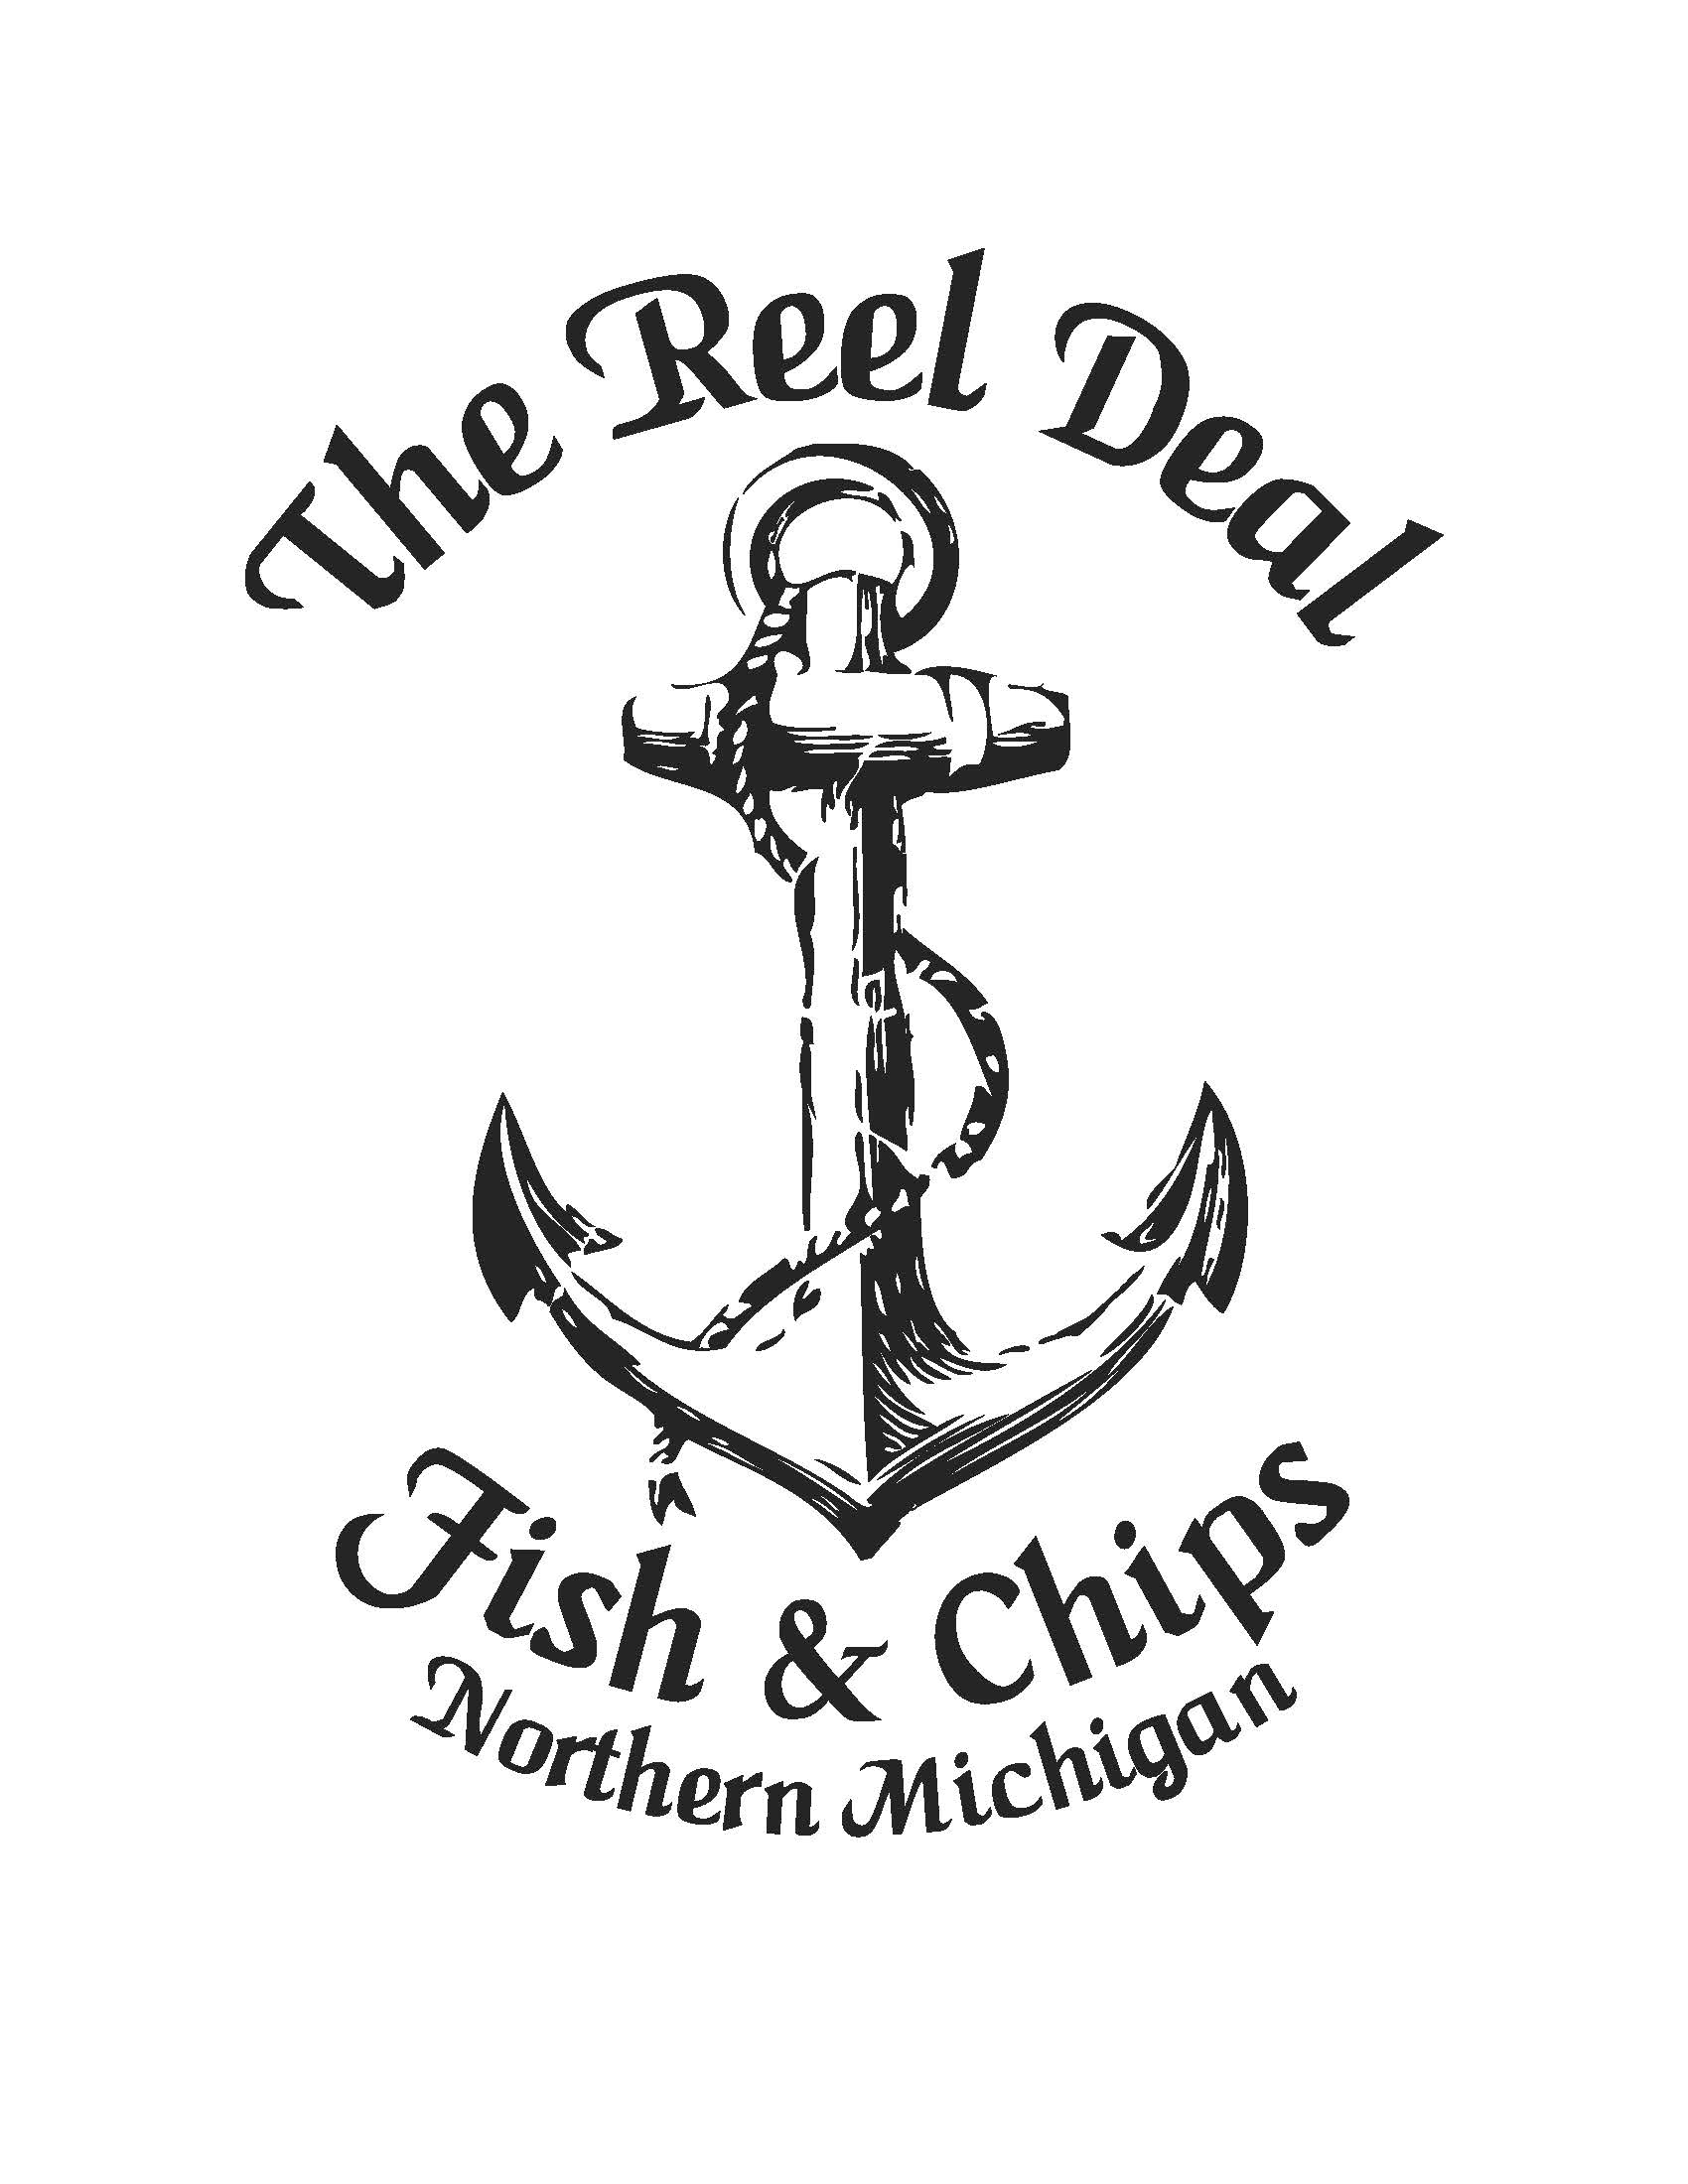 Reel Deal Fish